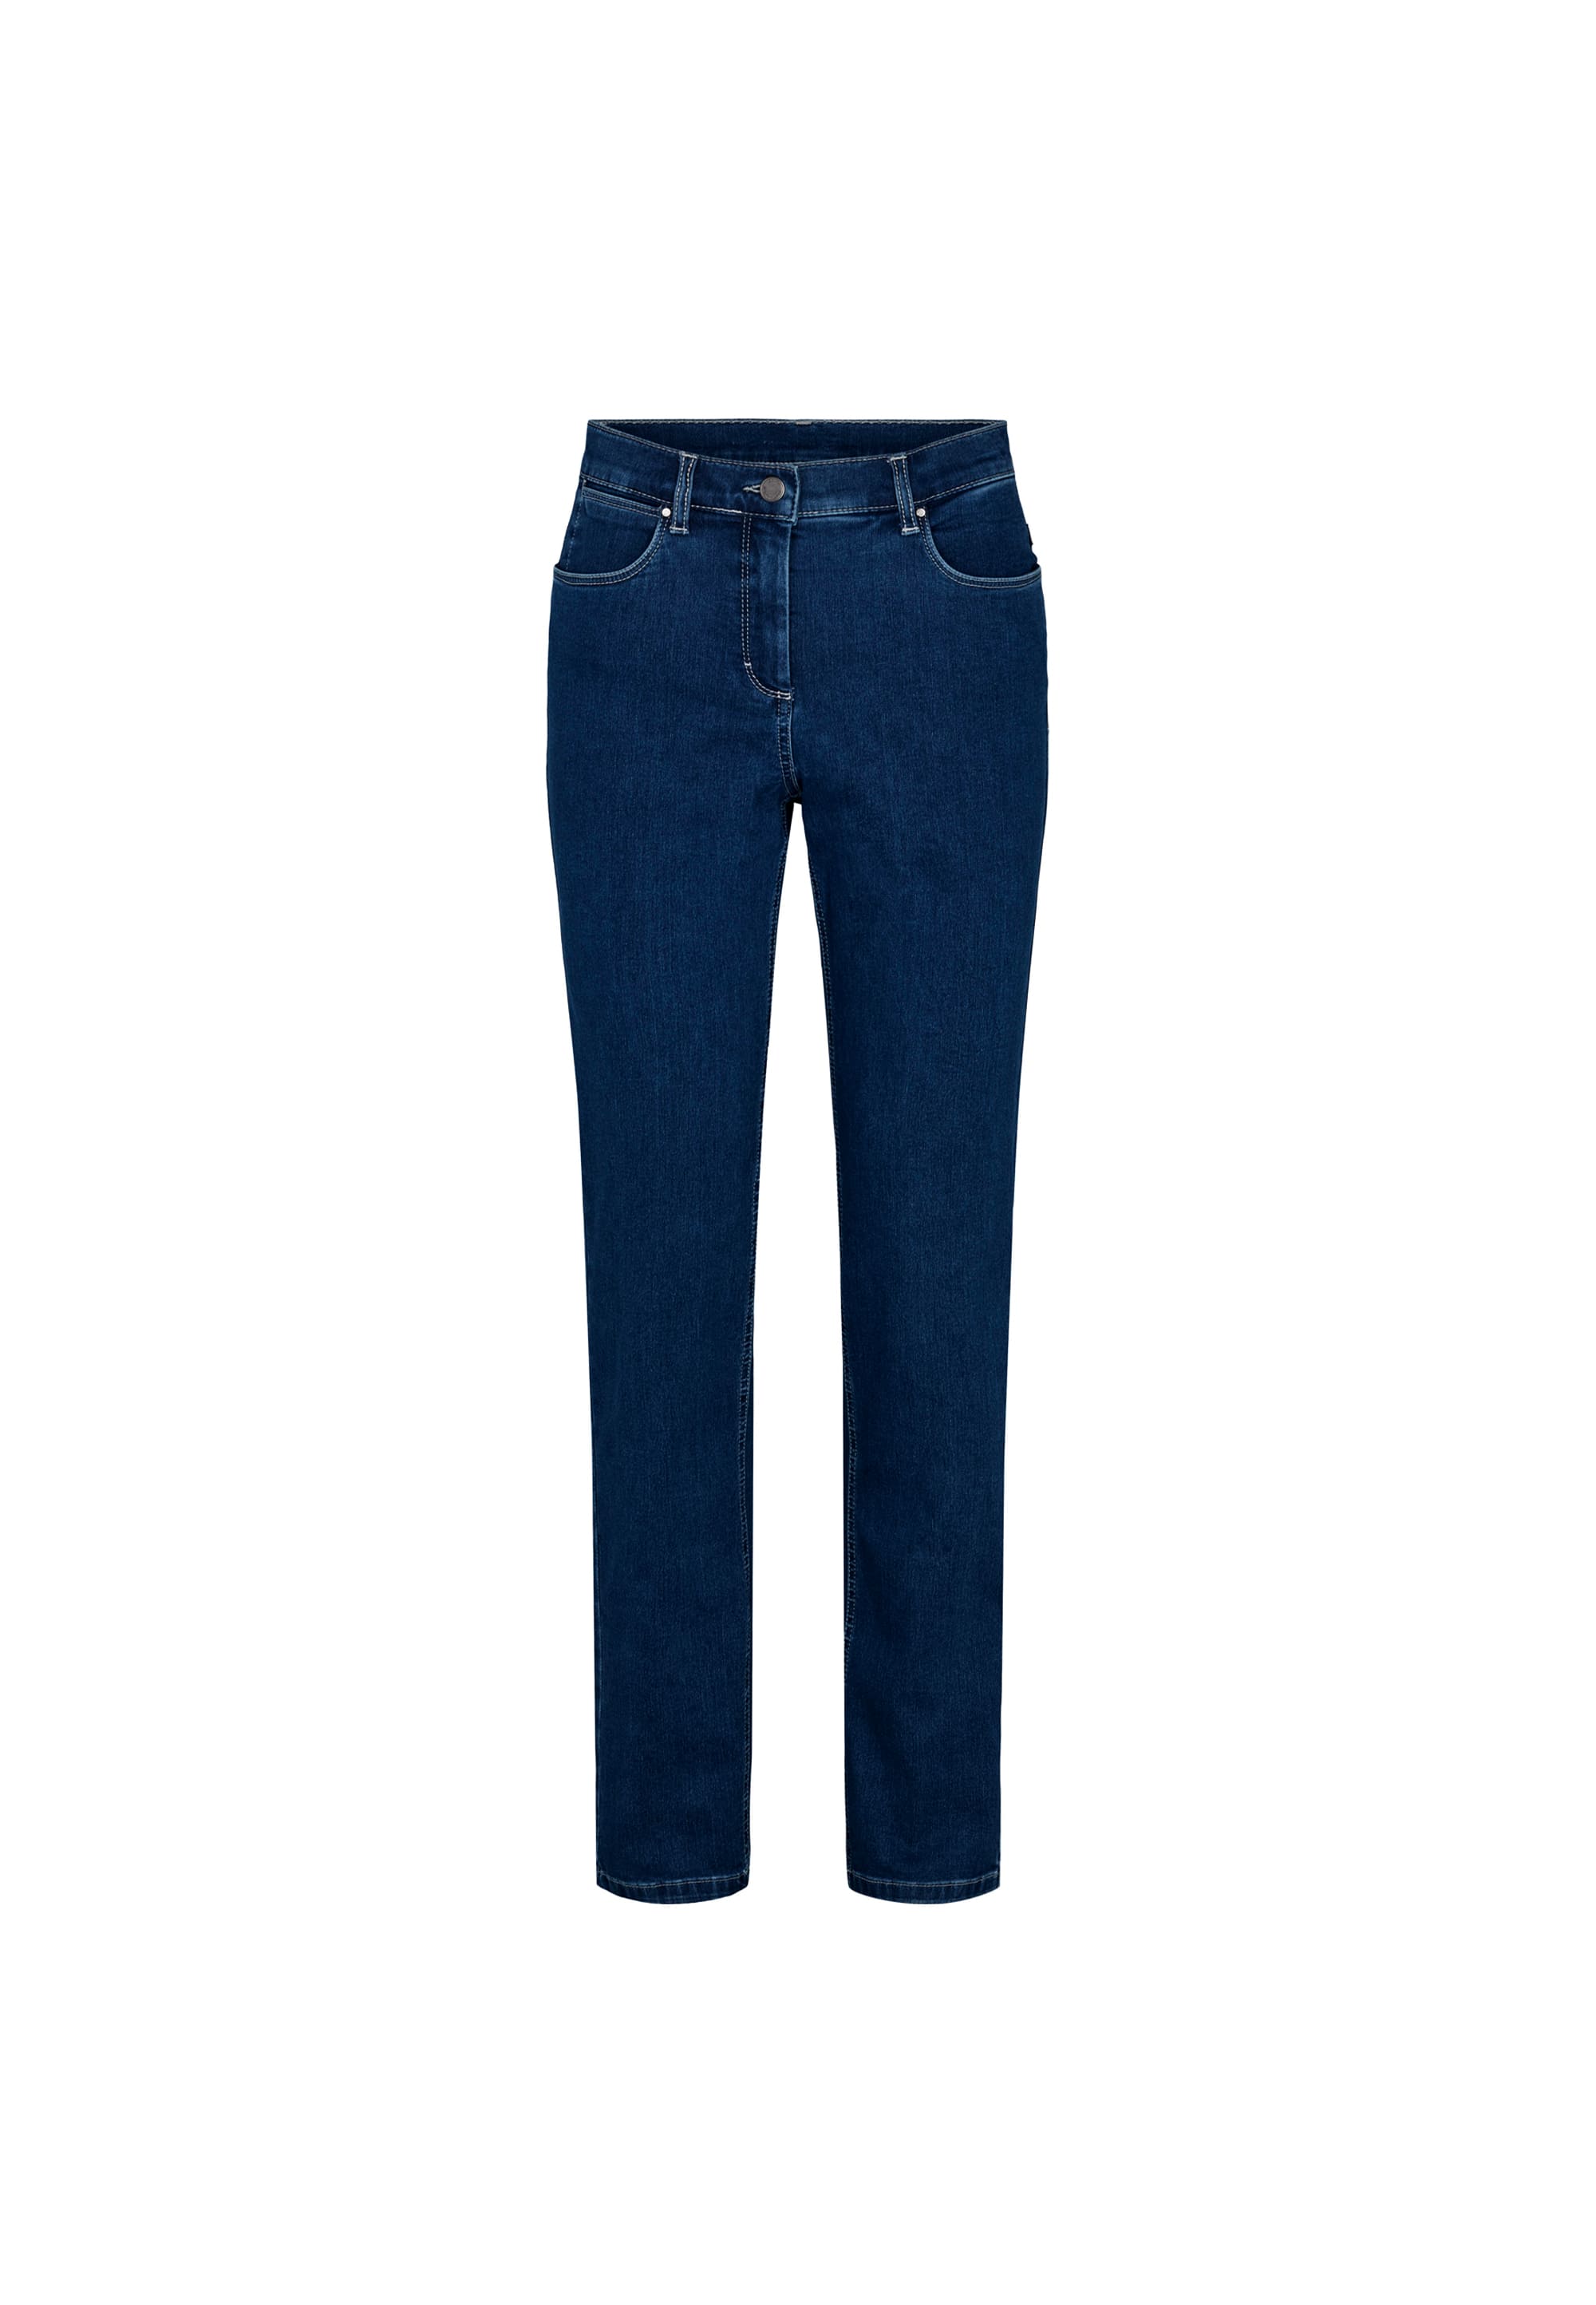 LAURIE Charlotte Regular - Long Length Trousers REGULAR 49501 Dark Blue Denim